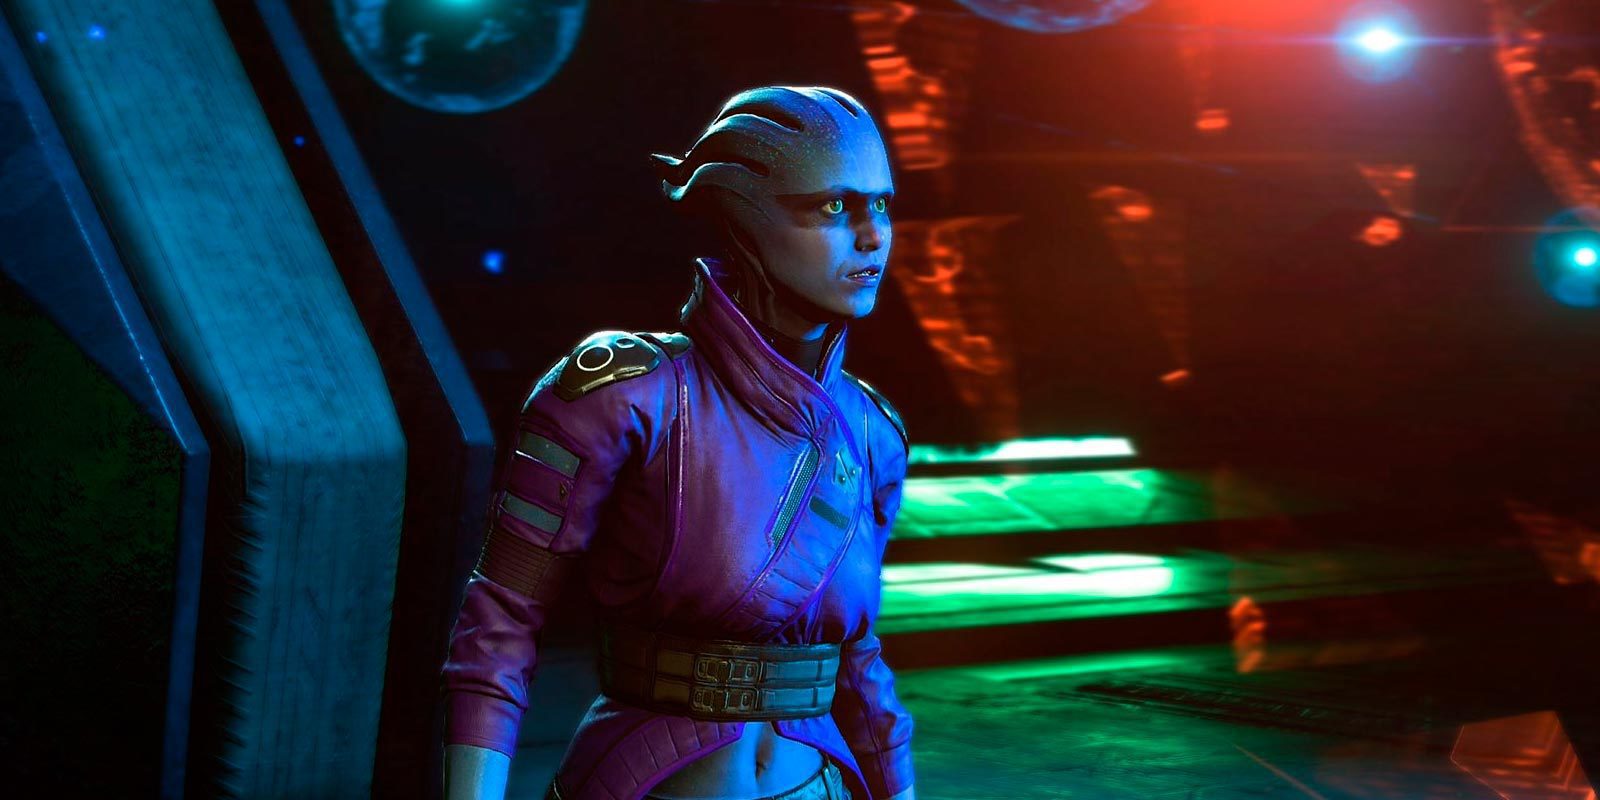 Electronic Arts retrasará 'Mass Effect Andromeda' si lo consideran necesario